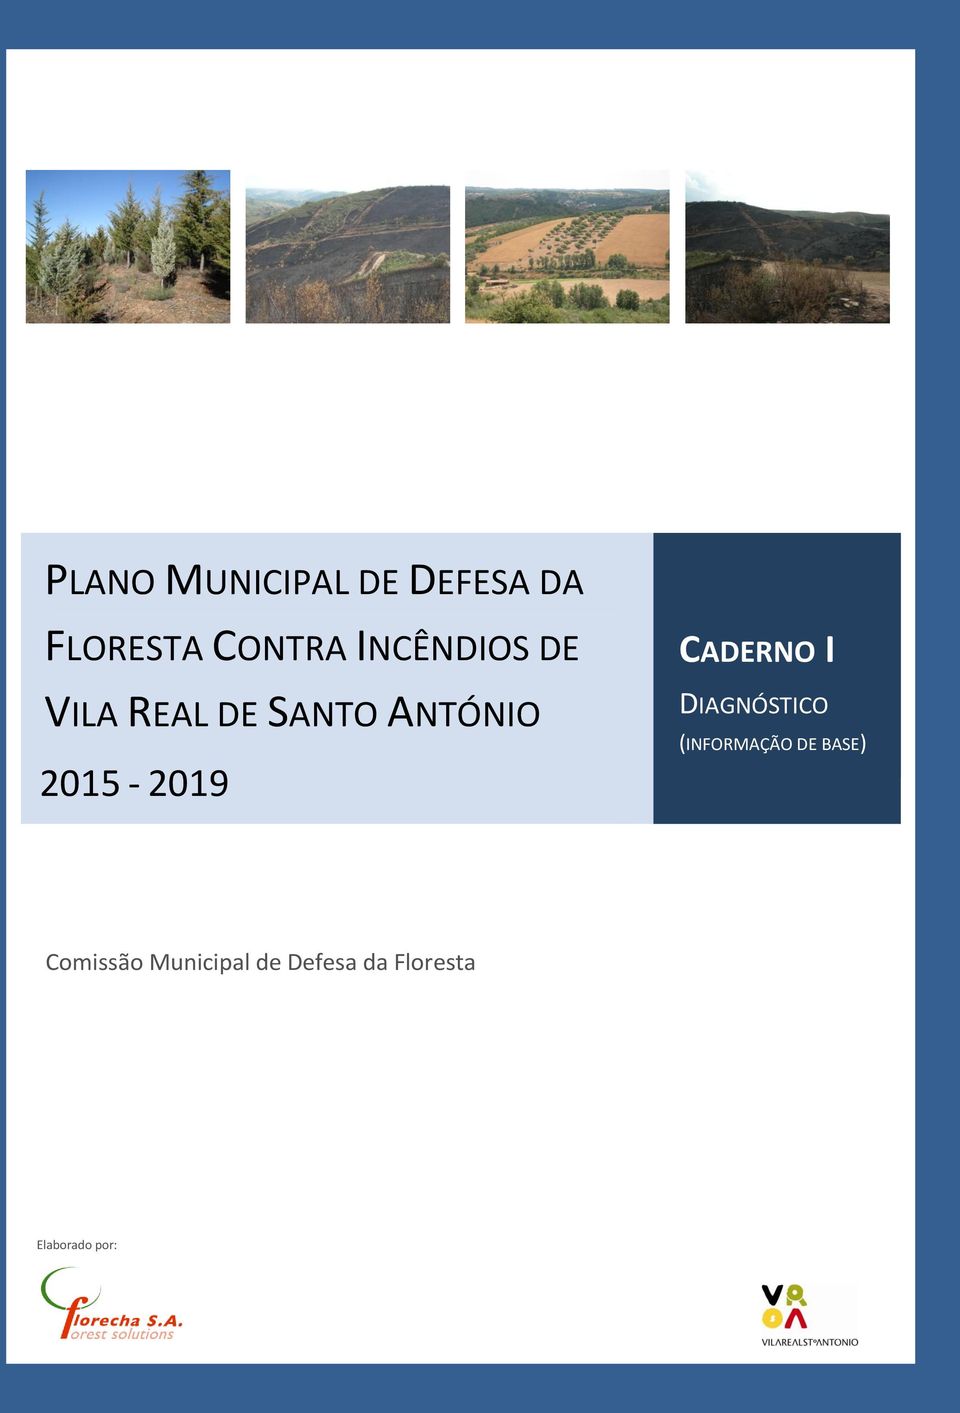 2015-2019 CADERNO I DIAGNÓSTICO (INFORMAÇÃO DE